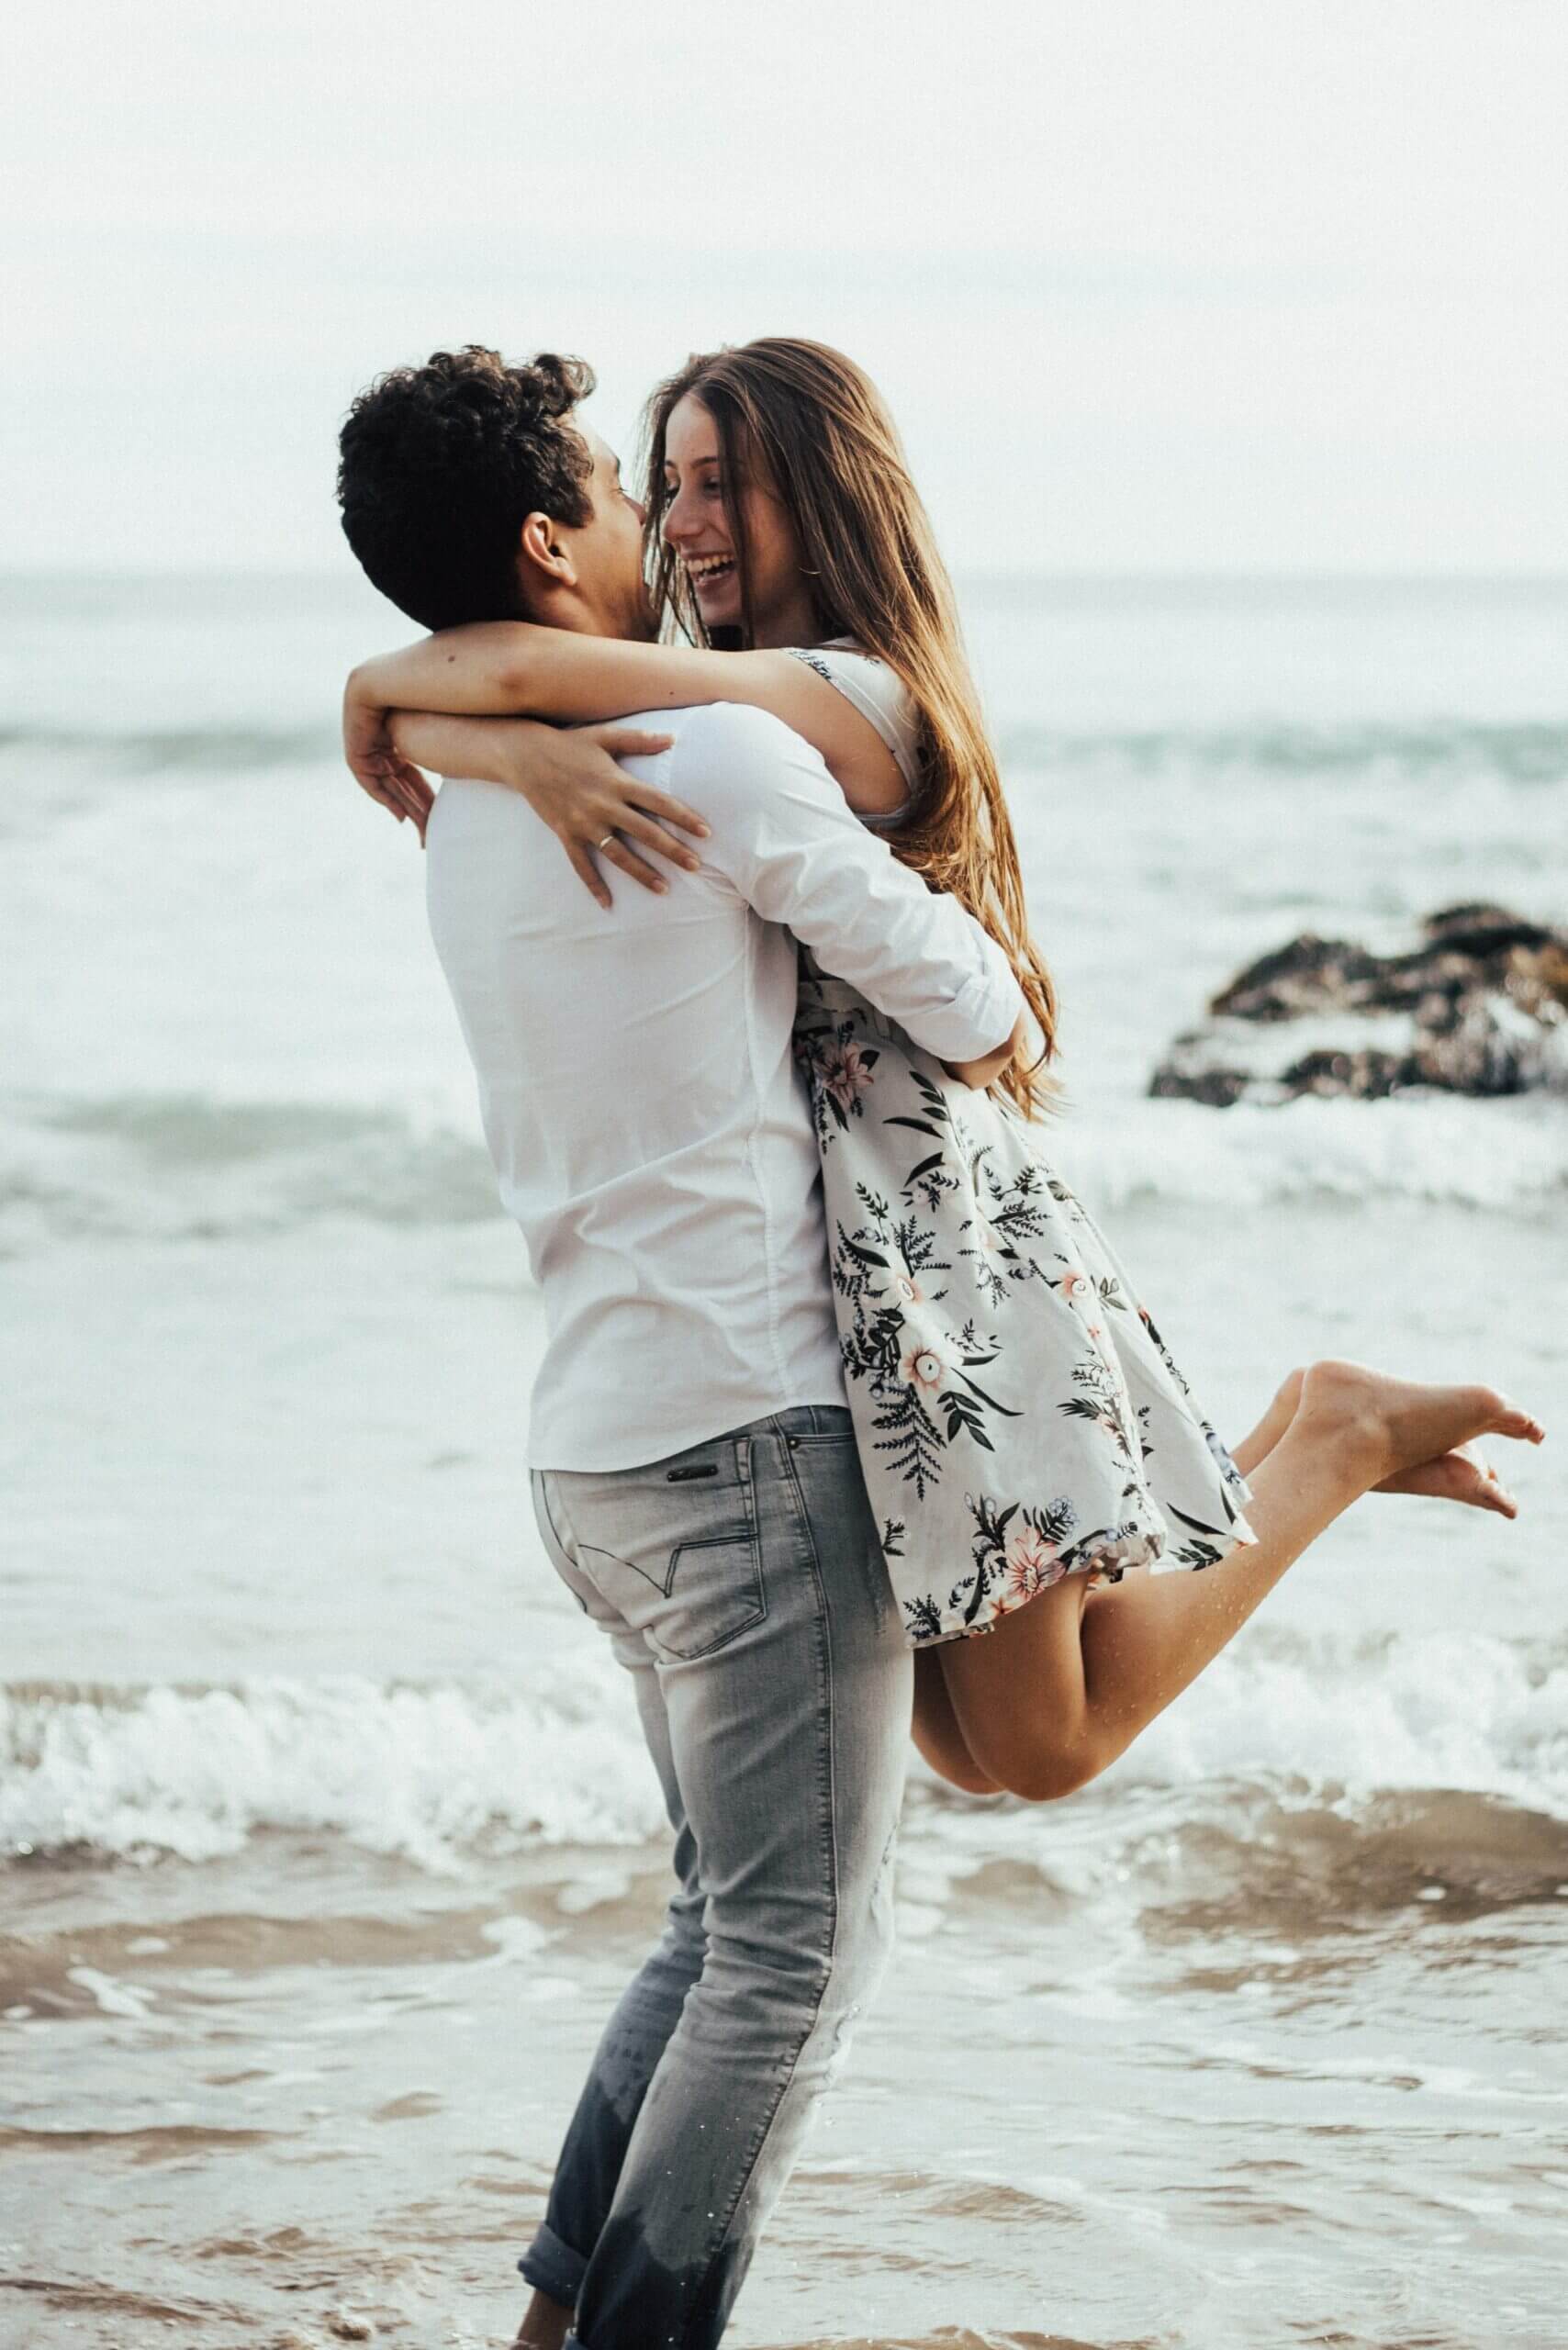 Dies ist ein Foto, das einen Mann und eine Frau am Meer zeigt. Der Mann hebt die Frau hoch, beide lächeln und umarmen sich.